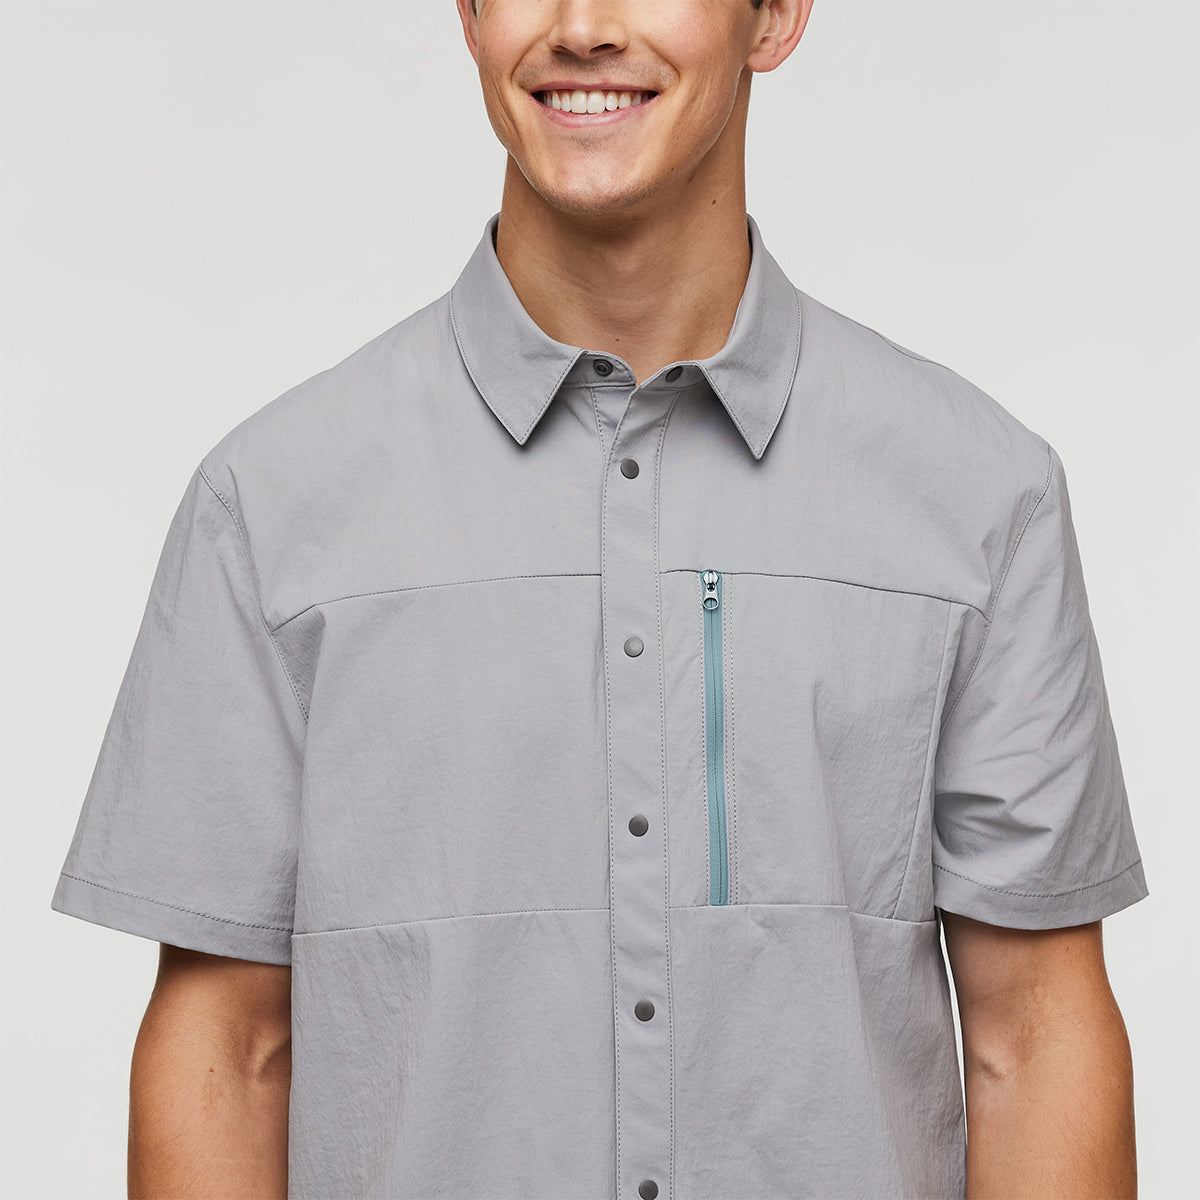 Sumaco Short-Sleeve Shirt - MENS